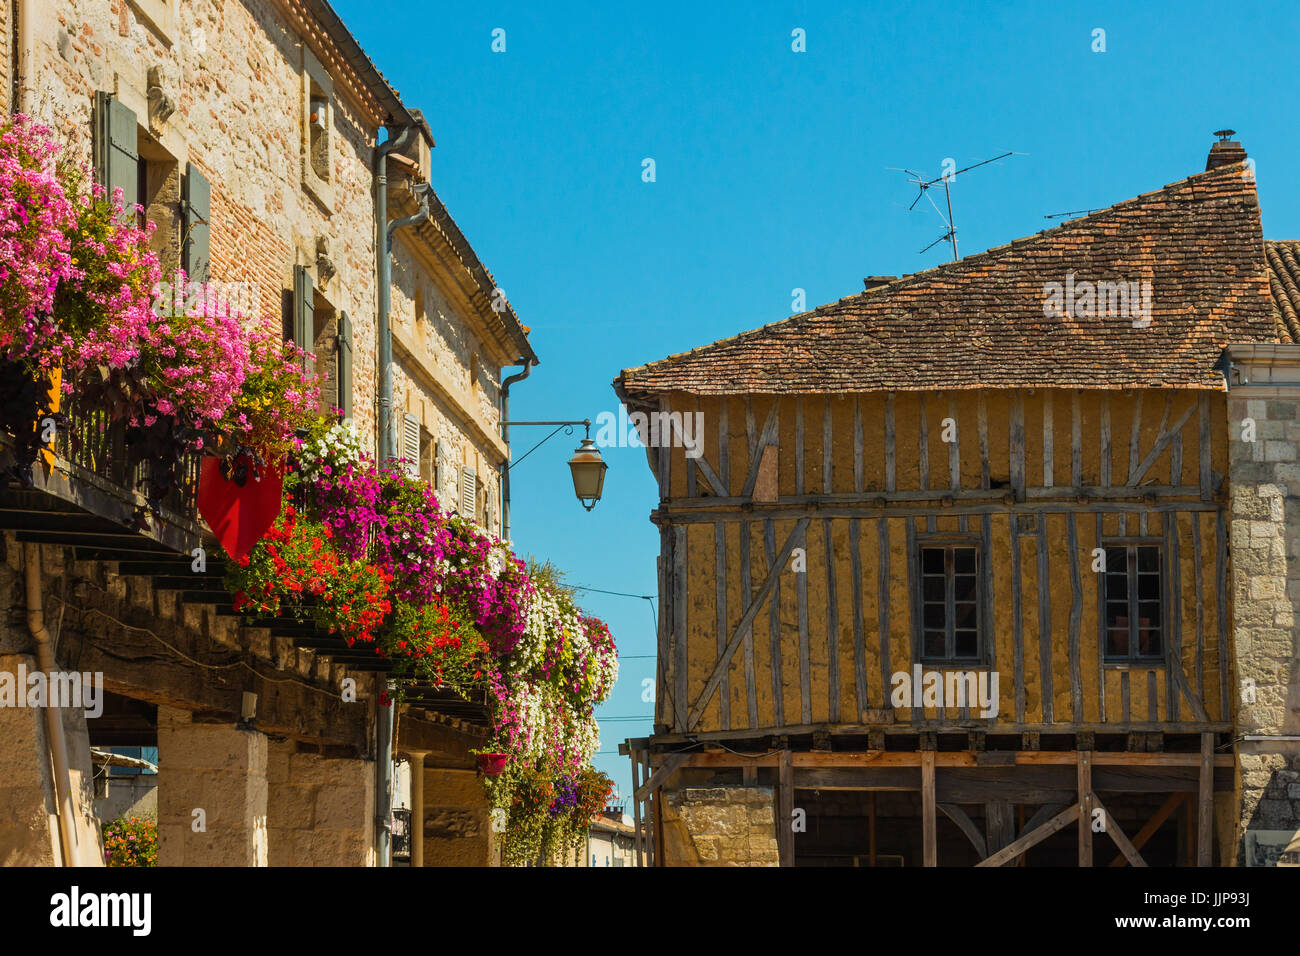 Fleurs et half-timbered édifice médiéval sur la Place de la Halle dans cette jolie ville bastide du sud-ouest. Villereal, Lot-et-Garonne, France Banque D'Images